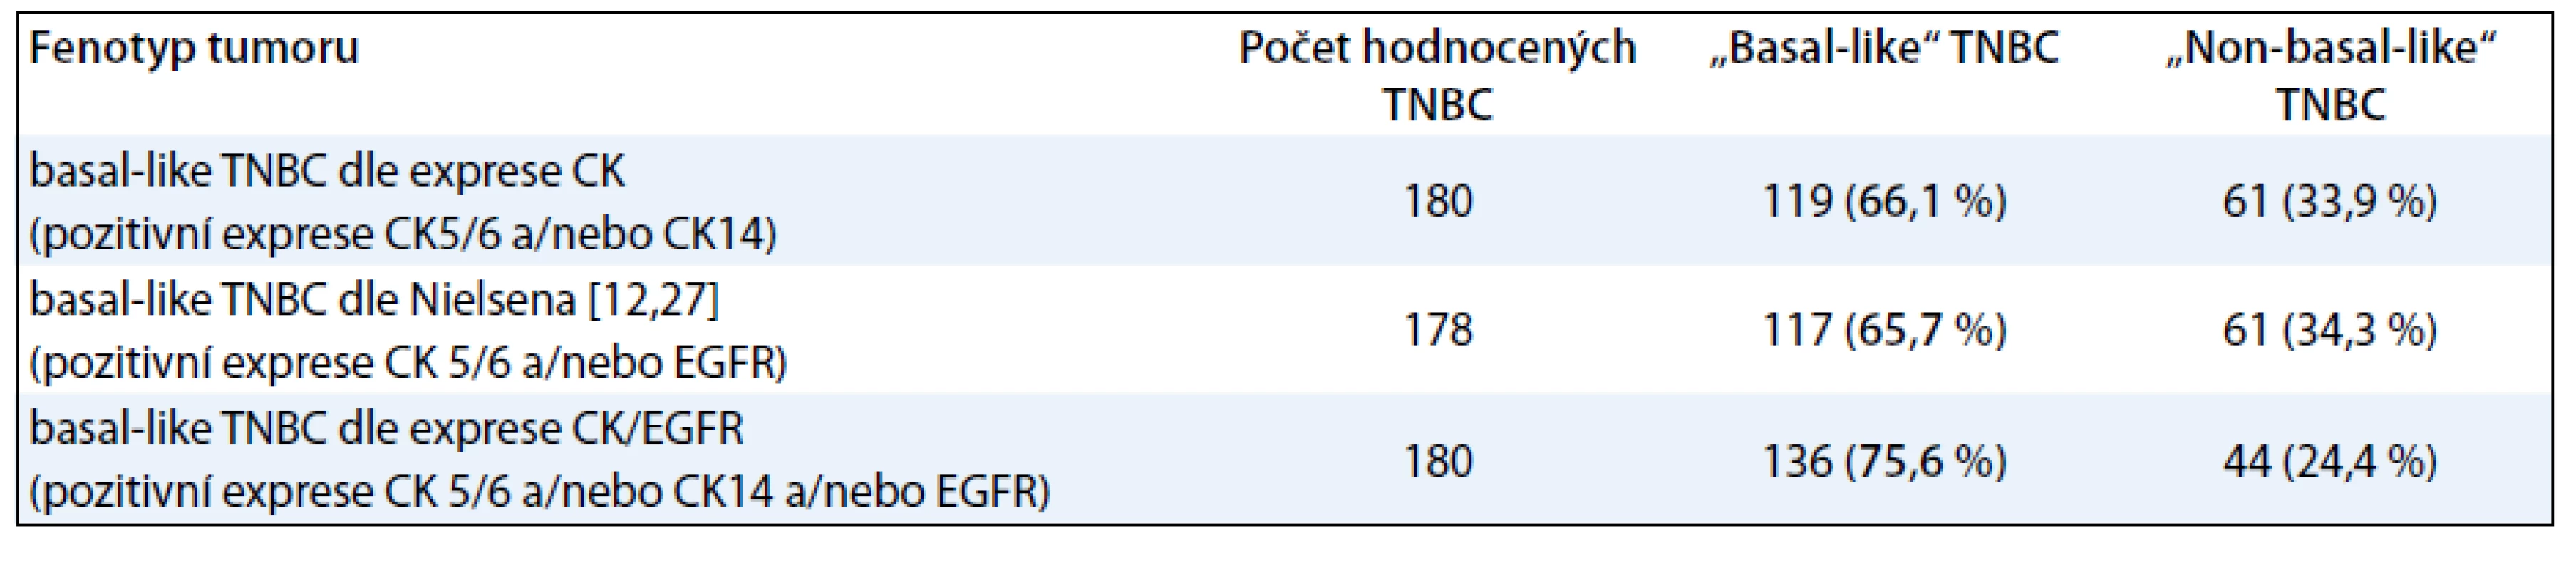 Molekulární klasifikace TNBC na základě histologického a imunohistochemického vyšetření.